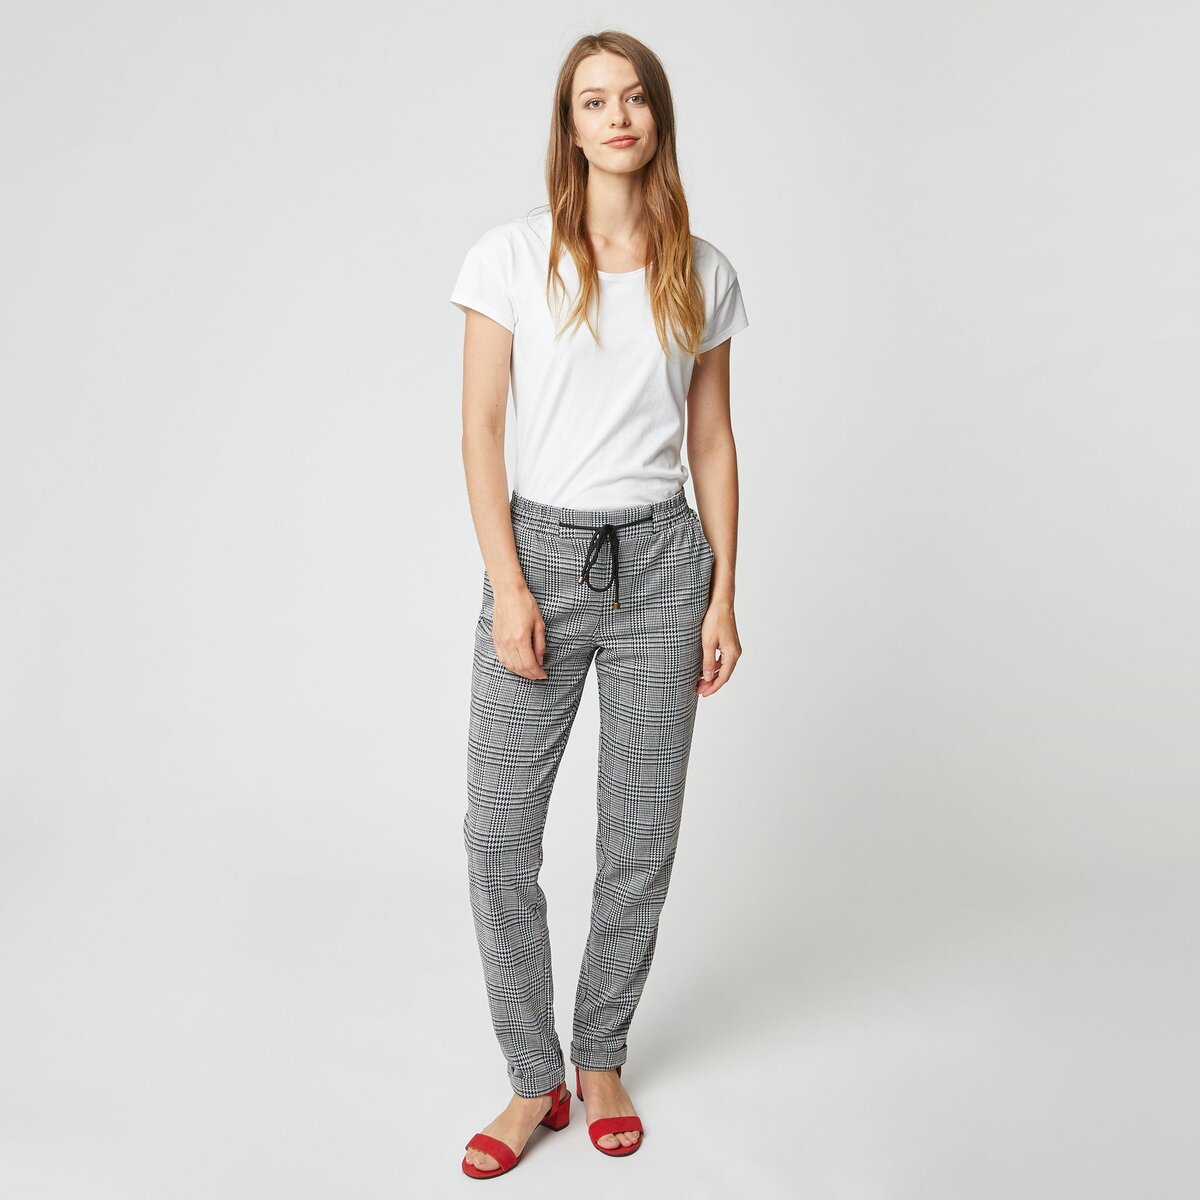 INEXTENSO Pantalon vintage à carreaux gris femme